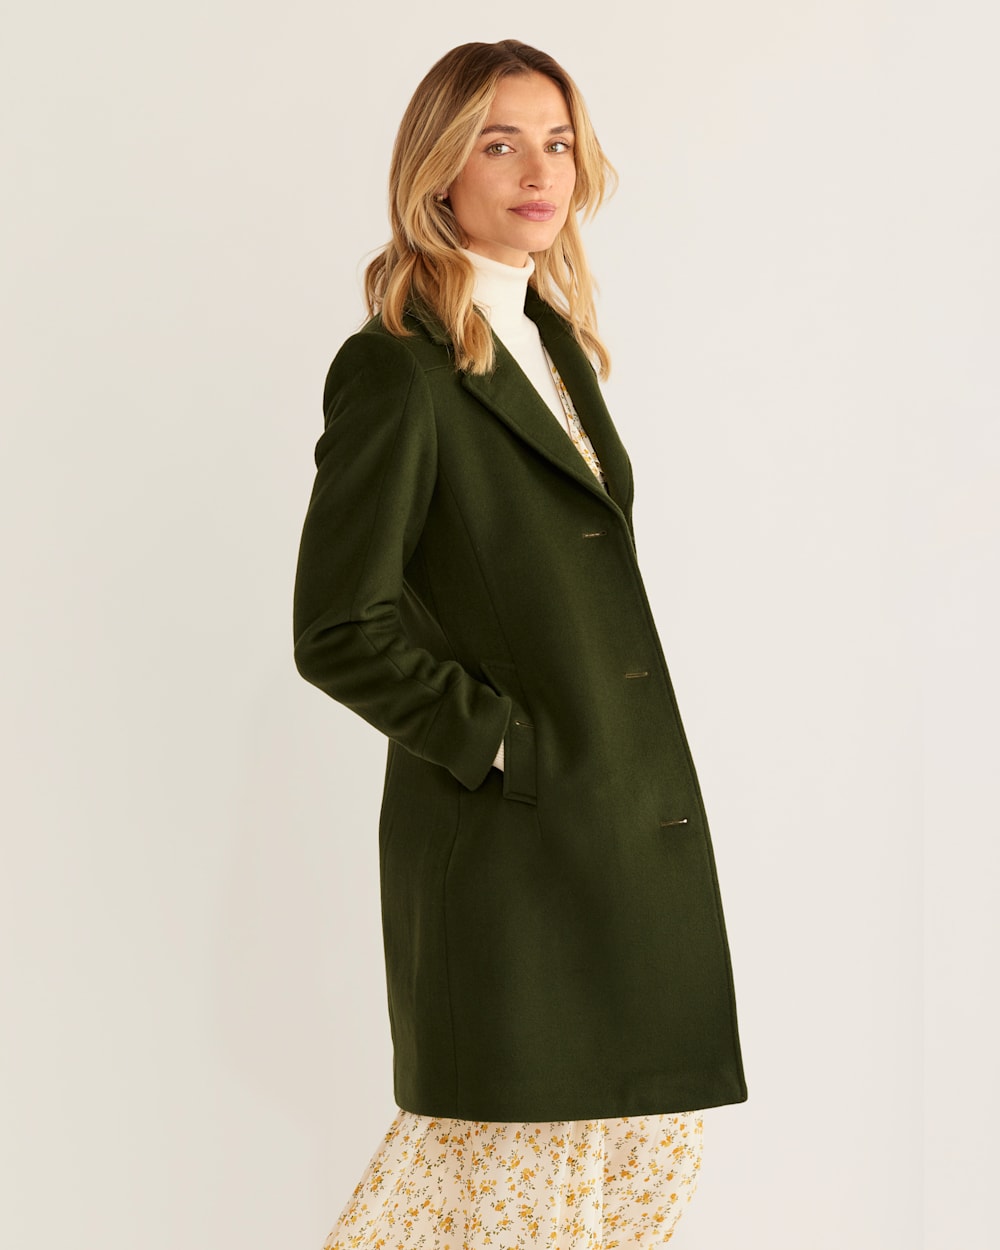 Stay Warm & Stylish in the Women's Walker Wool Coat